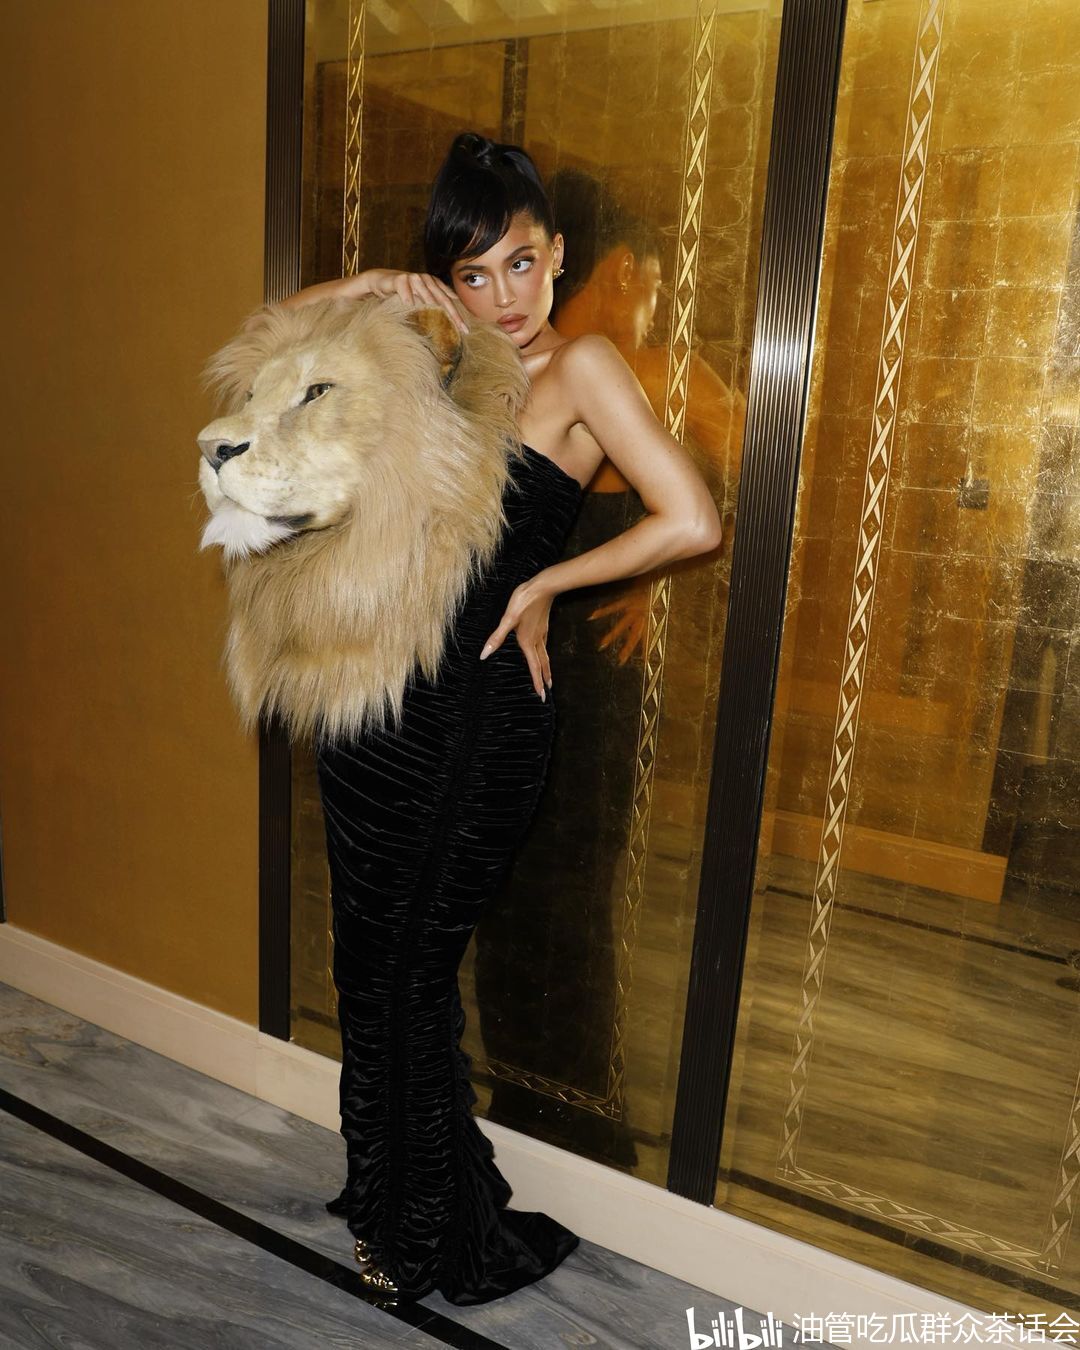 KylieJenner狮子头打扮引热议 动物保护组织支持 - 哔哩哔哩